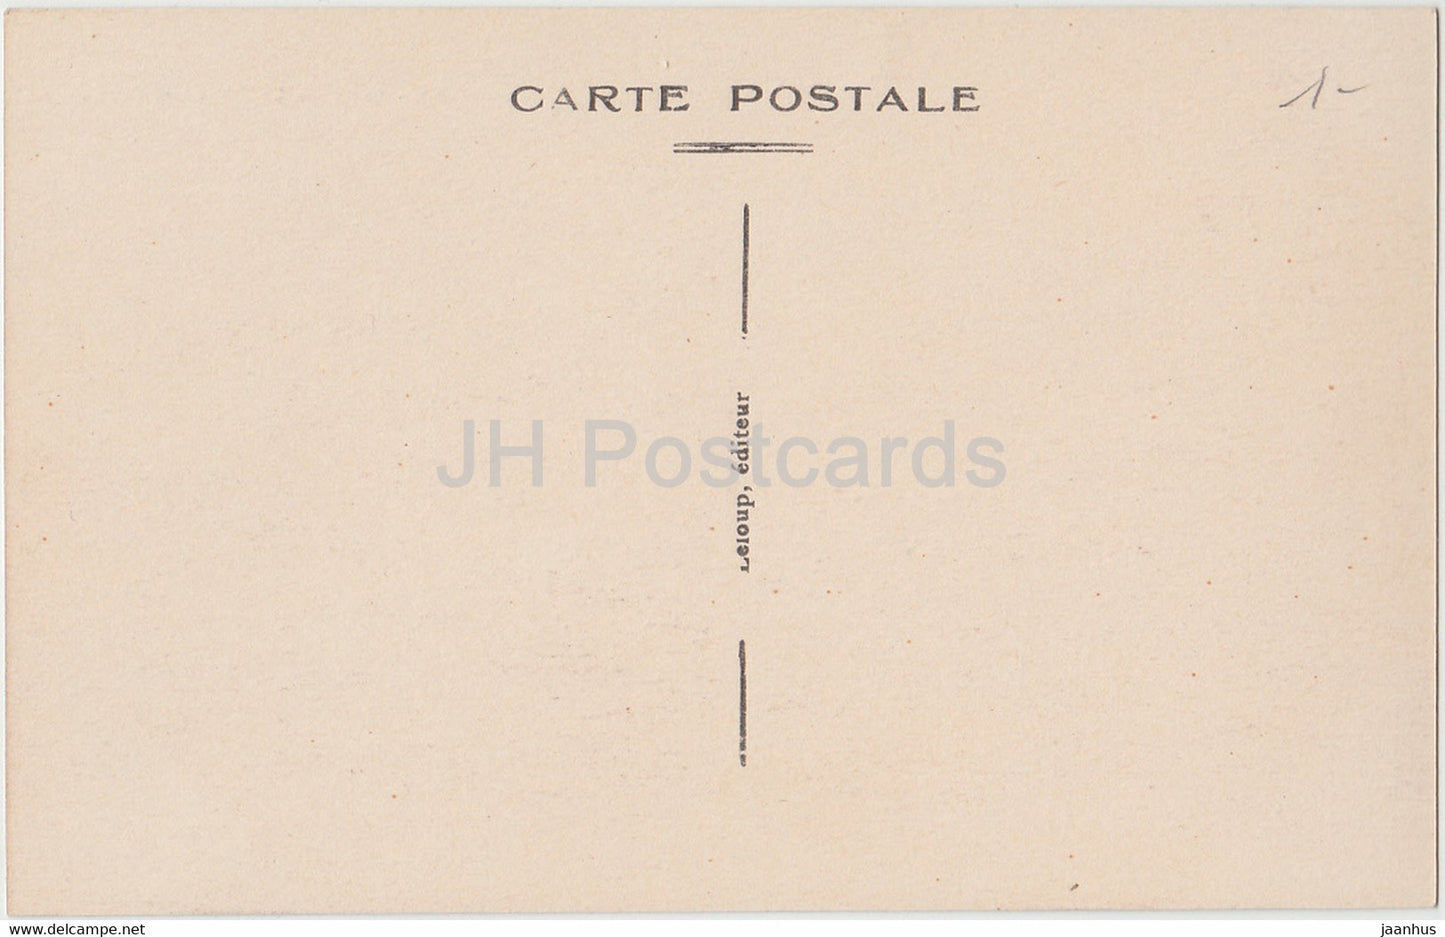 Mezieres - Le Batiment Communal - old postcard - France - unused